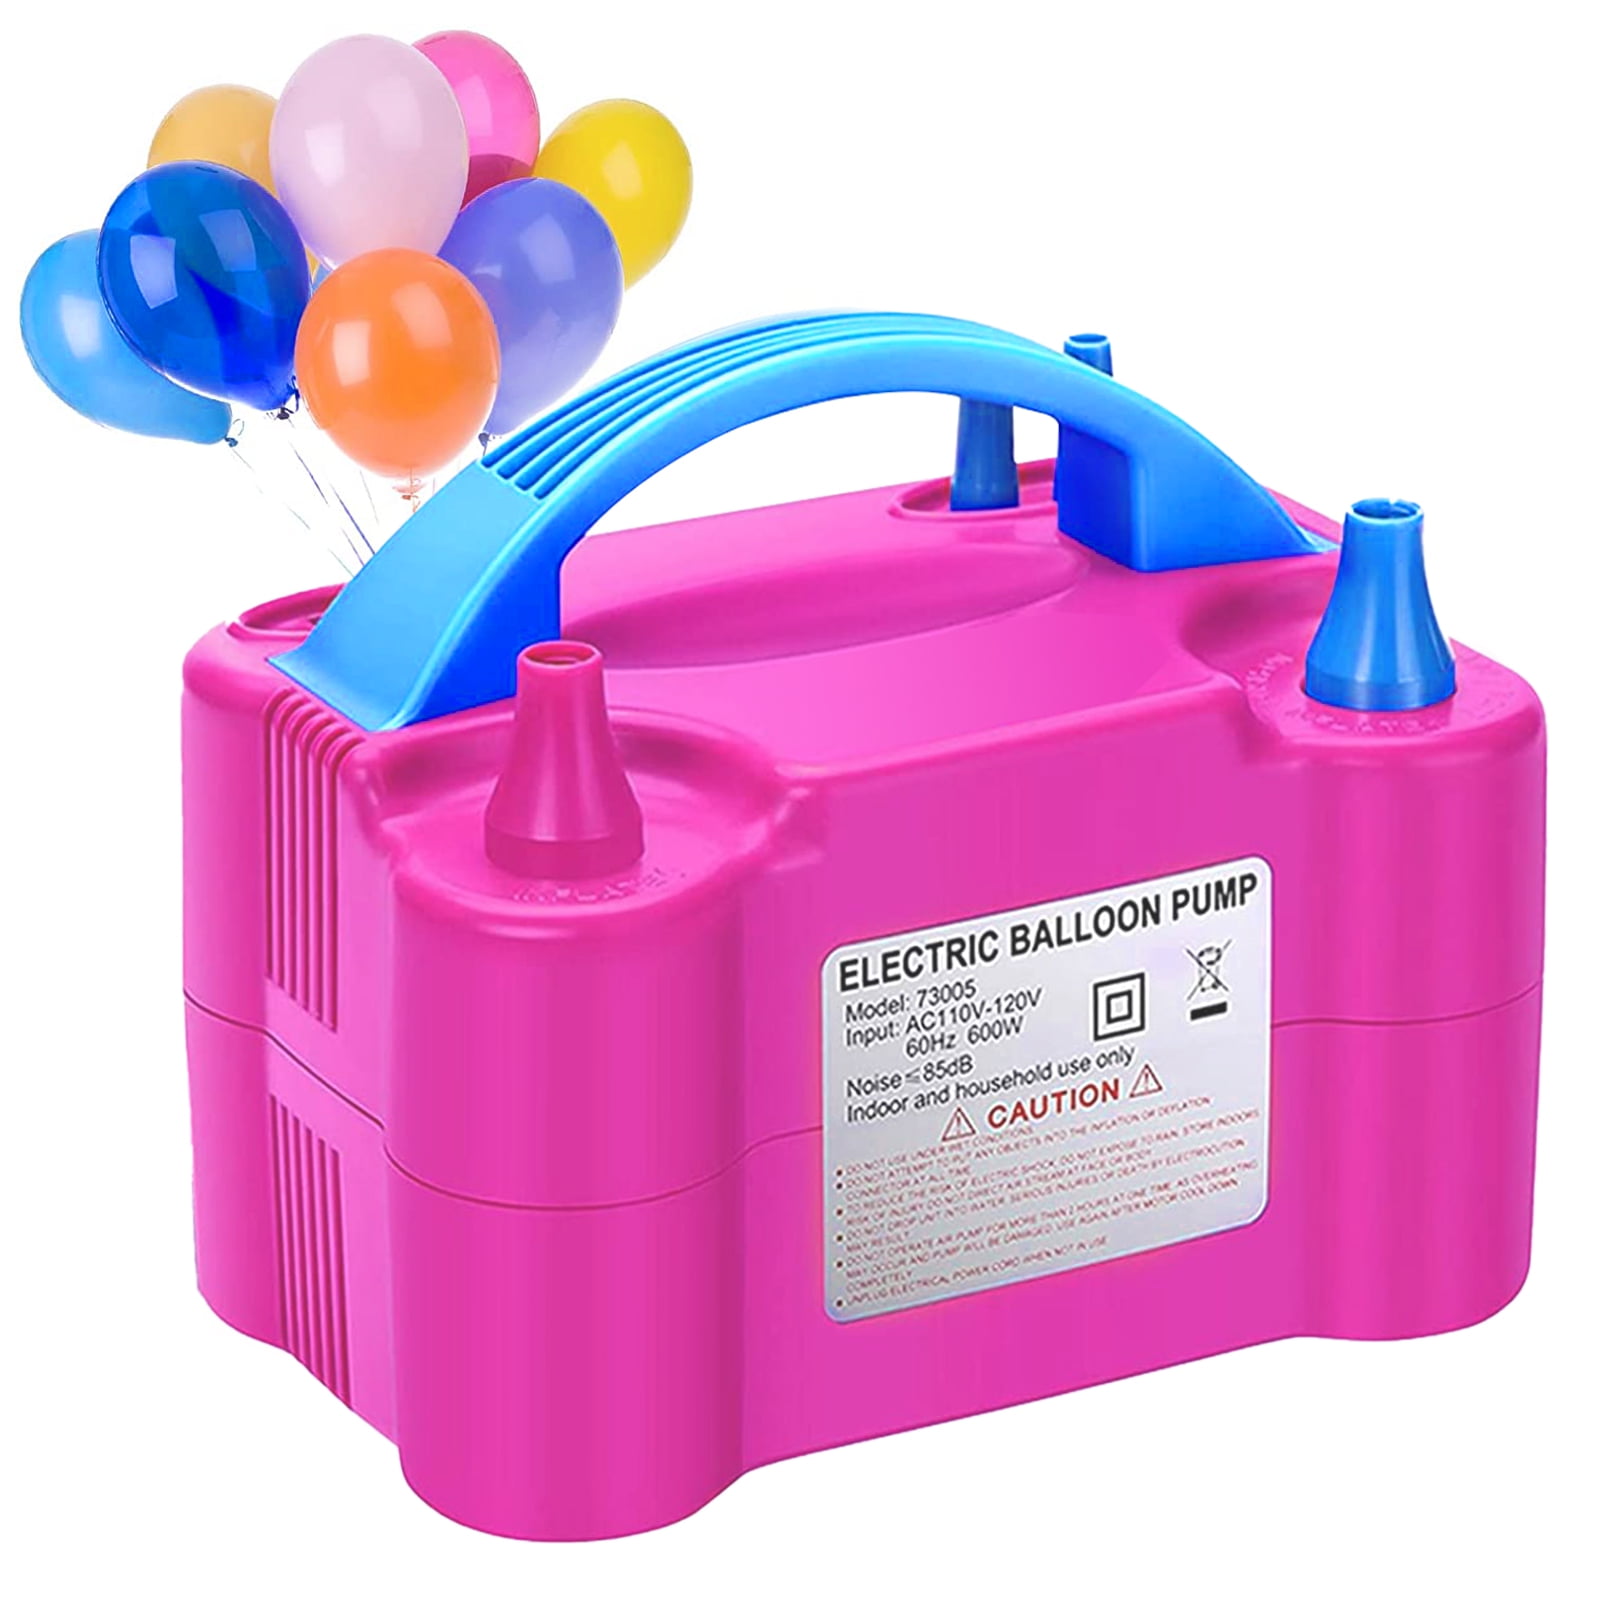 dnysysj portable electric balloon inflator air pump blower air balloon